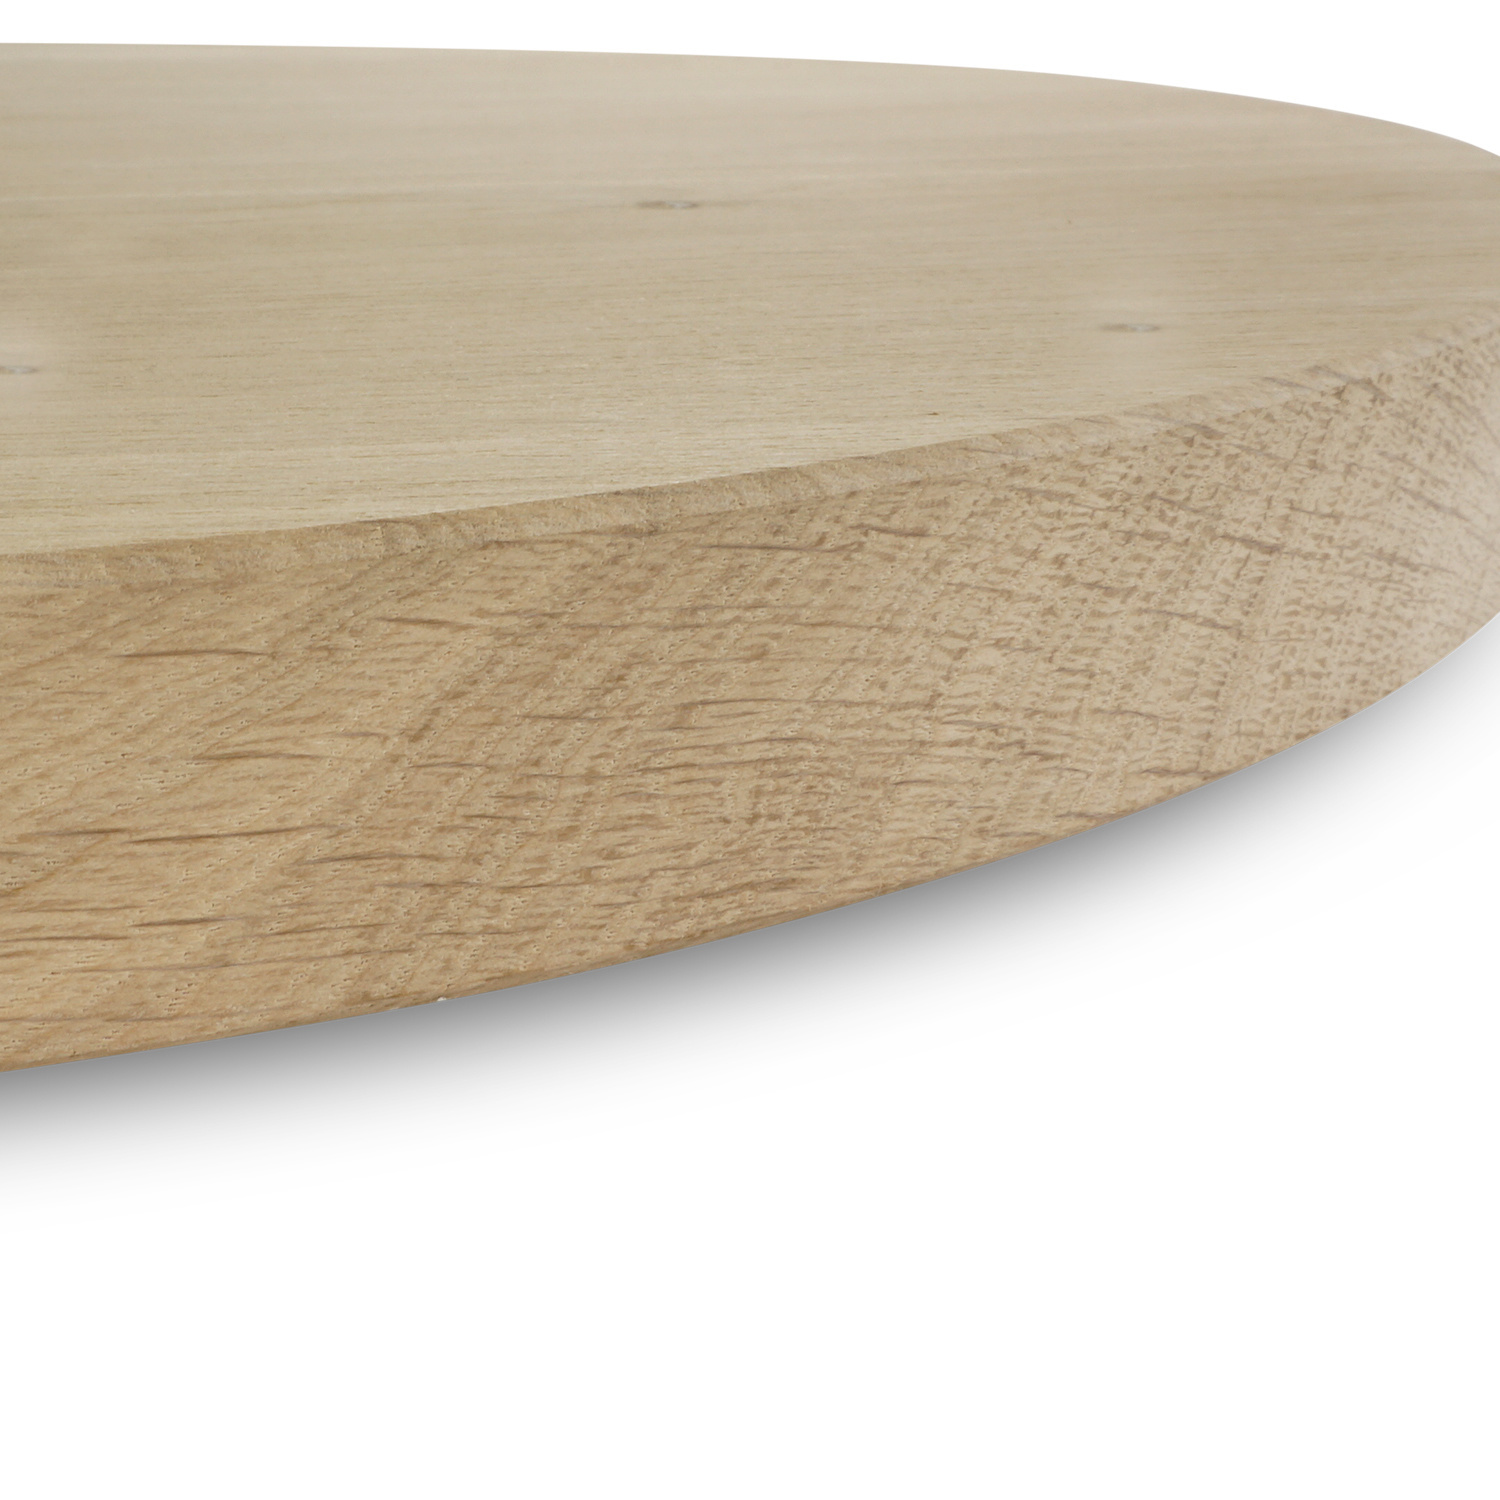  Tischplatte Eiche rund - 2,7 cm dick (1-Schicht) - Breite Lamellen (10 - 12 cm breit) - Eichenholz rustikal - verleimt & künstlich getrocknet (HF 8-12%) - verschiedene Größen